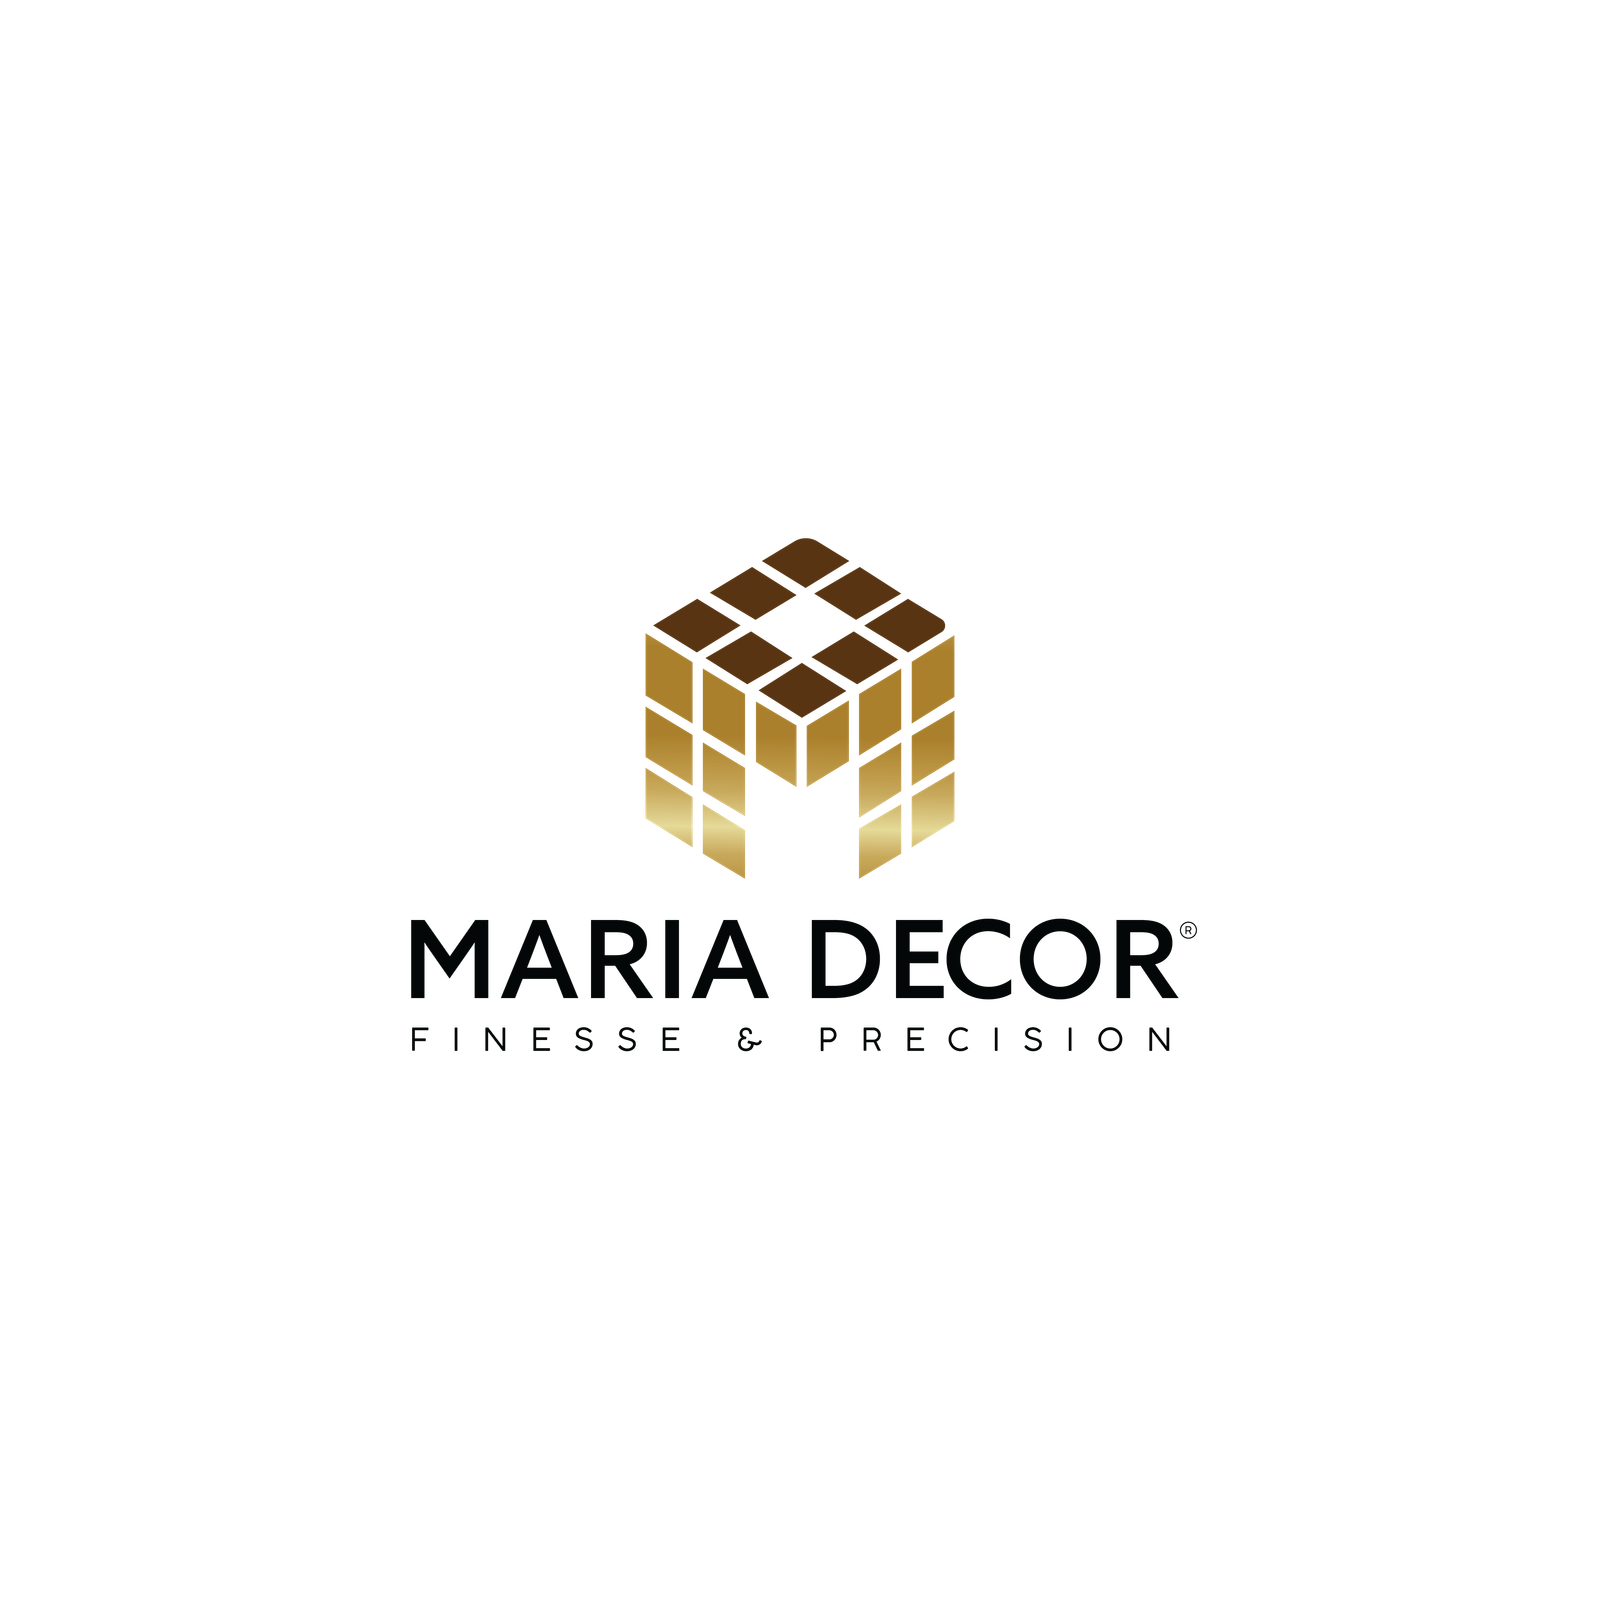 MARIA DECOR LOGO FINAL 02